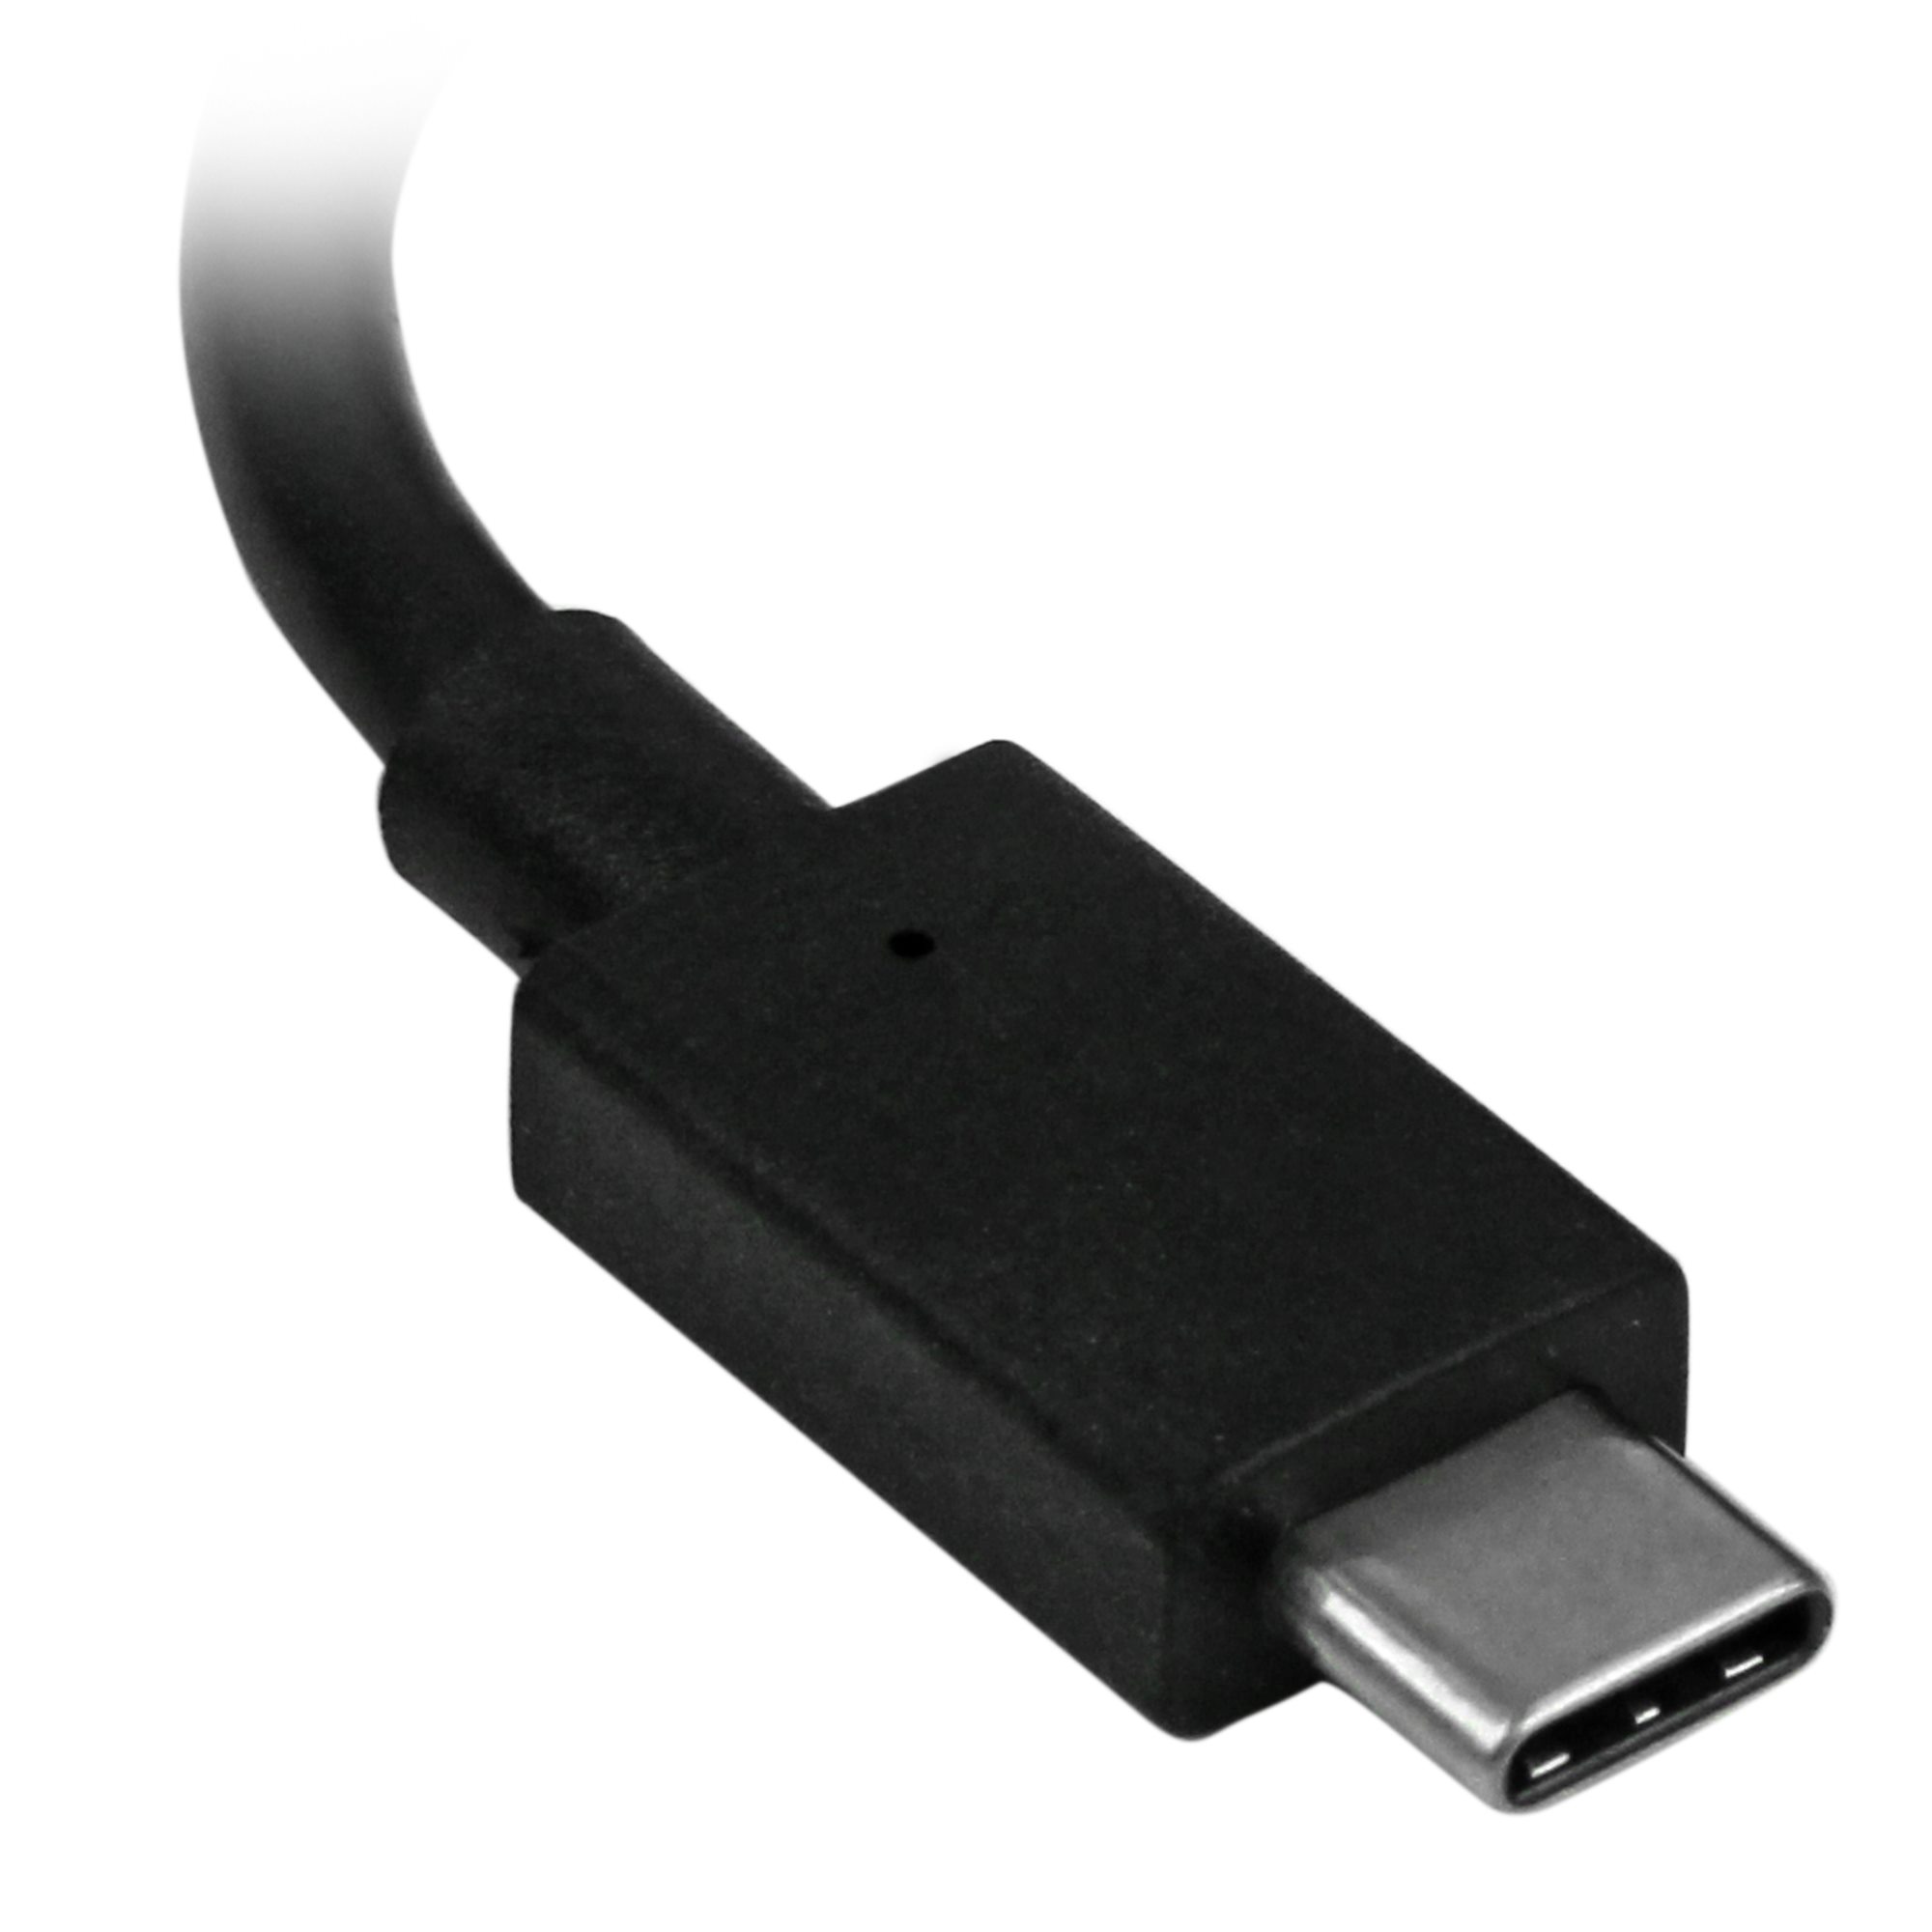  Monster - Adaptador USB 3.0 a HDMI, calidad 2K 1080p con  resolución de 60 Hz, computadora, laptop, TV o monitor : Electrónica